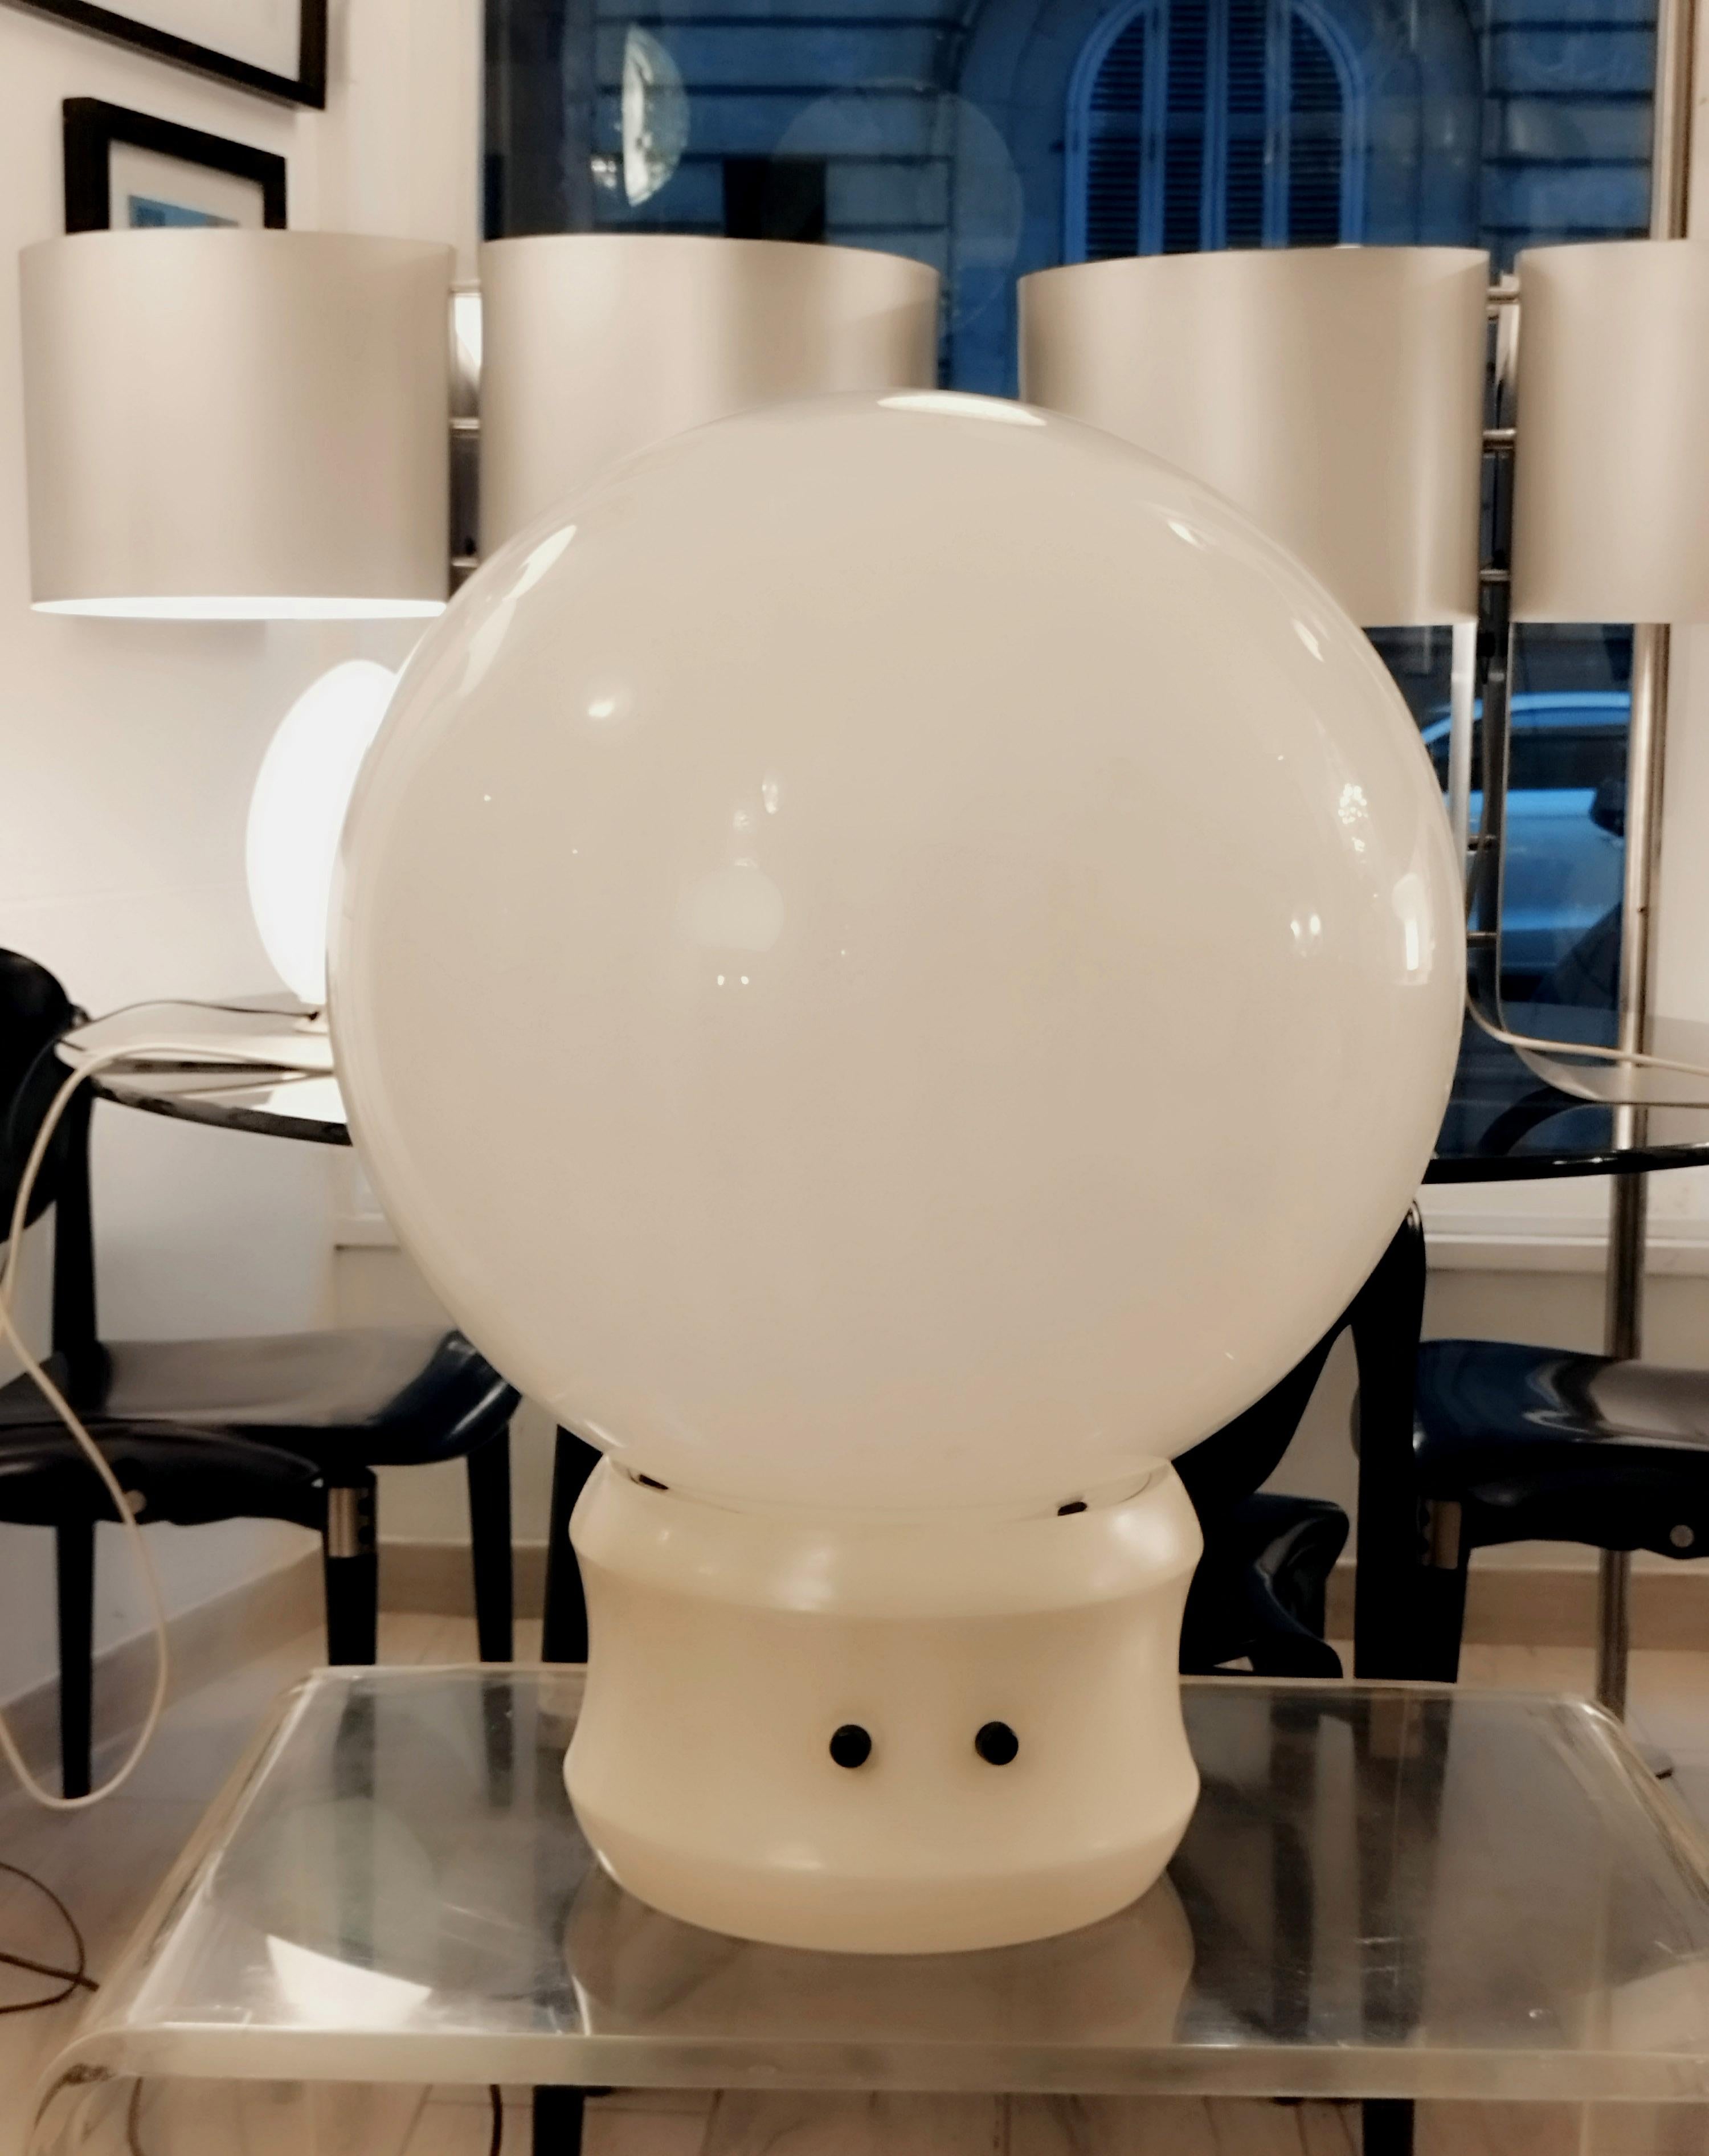 Lampe de table ou lampadaire Sfera Gigante grande d'Elio Martinelli pour Martinelli Luce.
La base en métal blanc avec deux interrupteurs différents supporte un abat-jour en verre dépoli d'un diamètre de 50 cm.